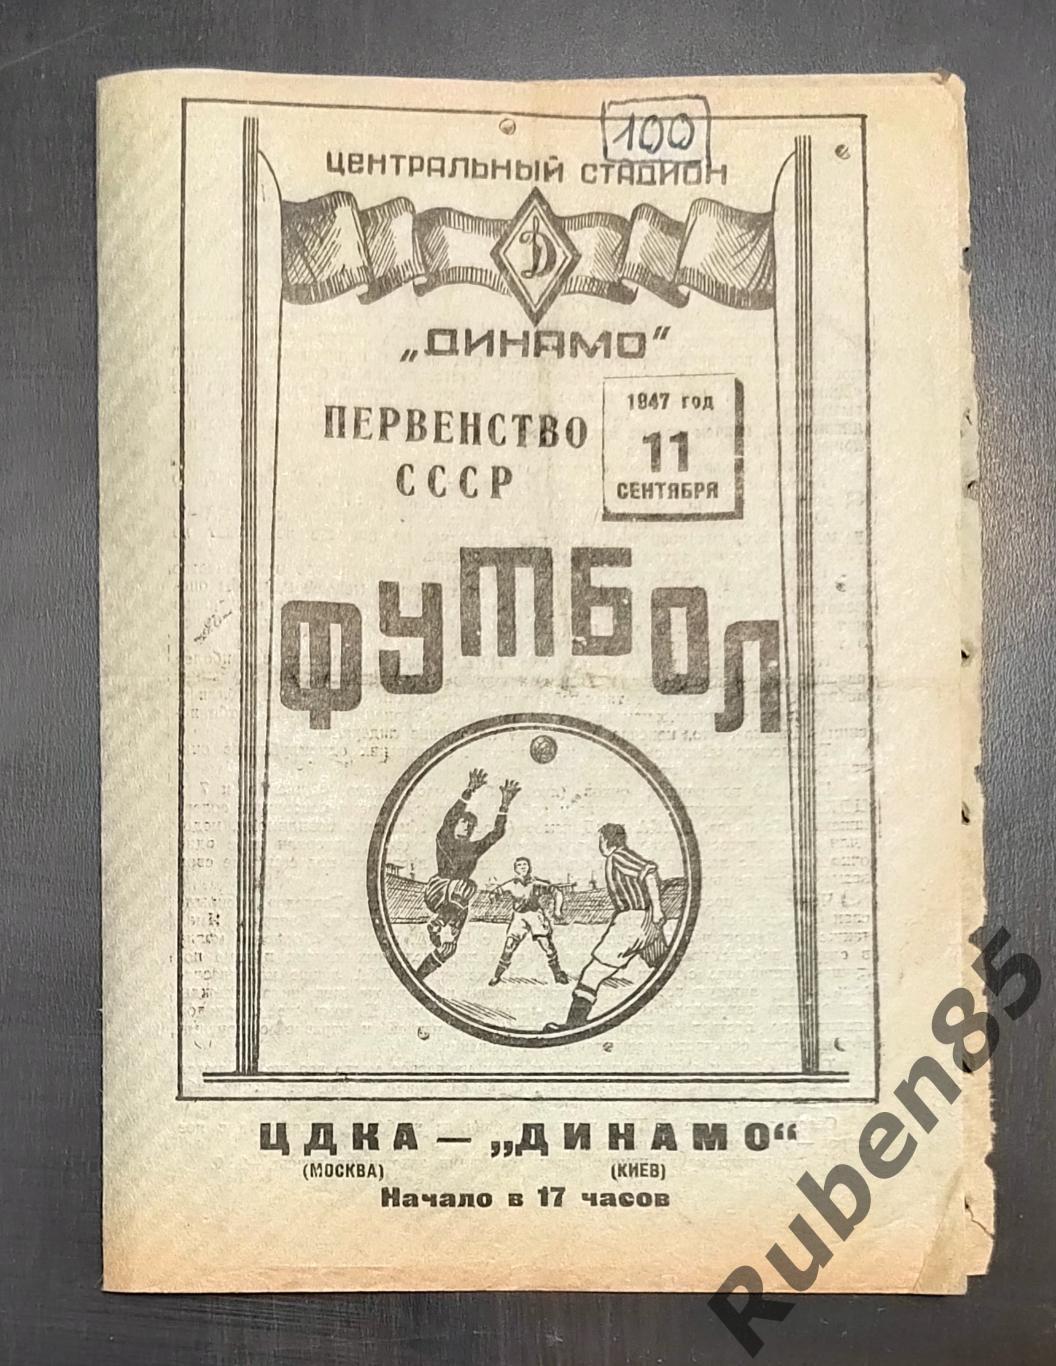 Футбол. Программа ЦДКА - Динамо Киев 11.09 1947 ЦСКА